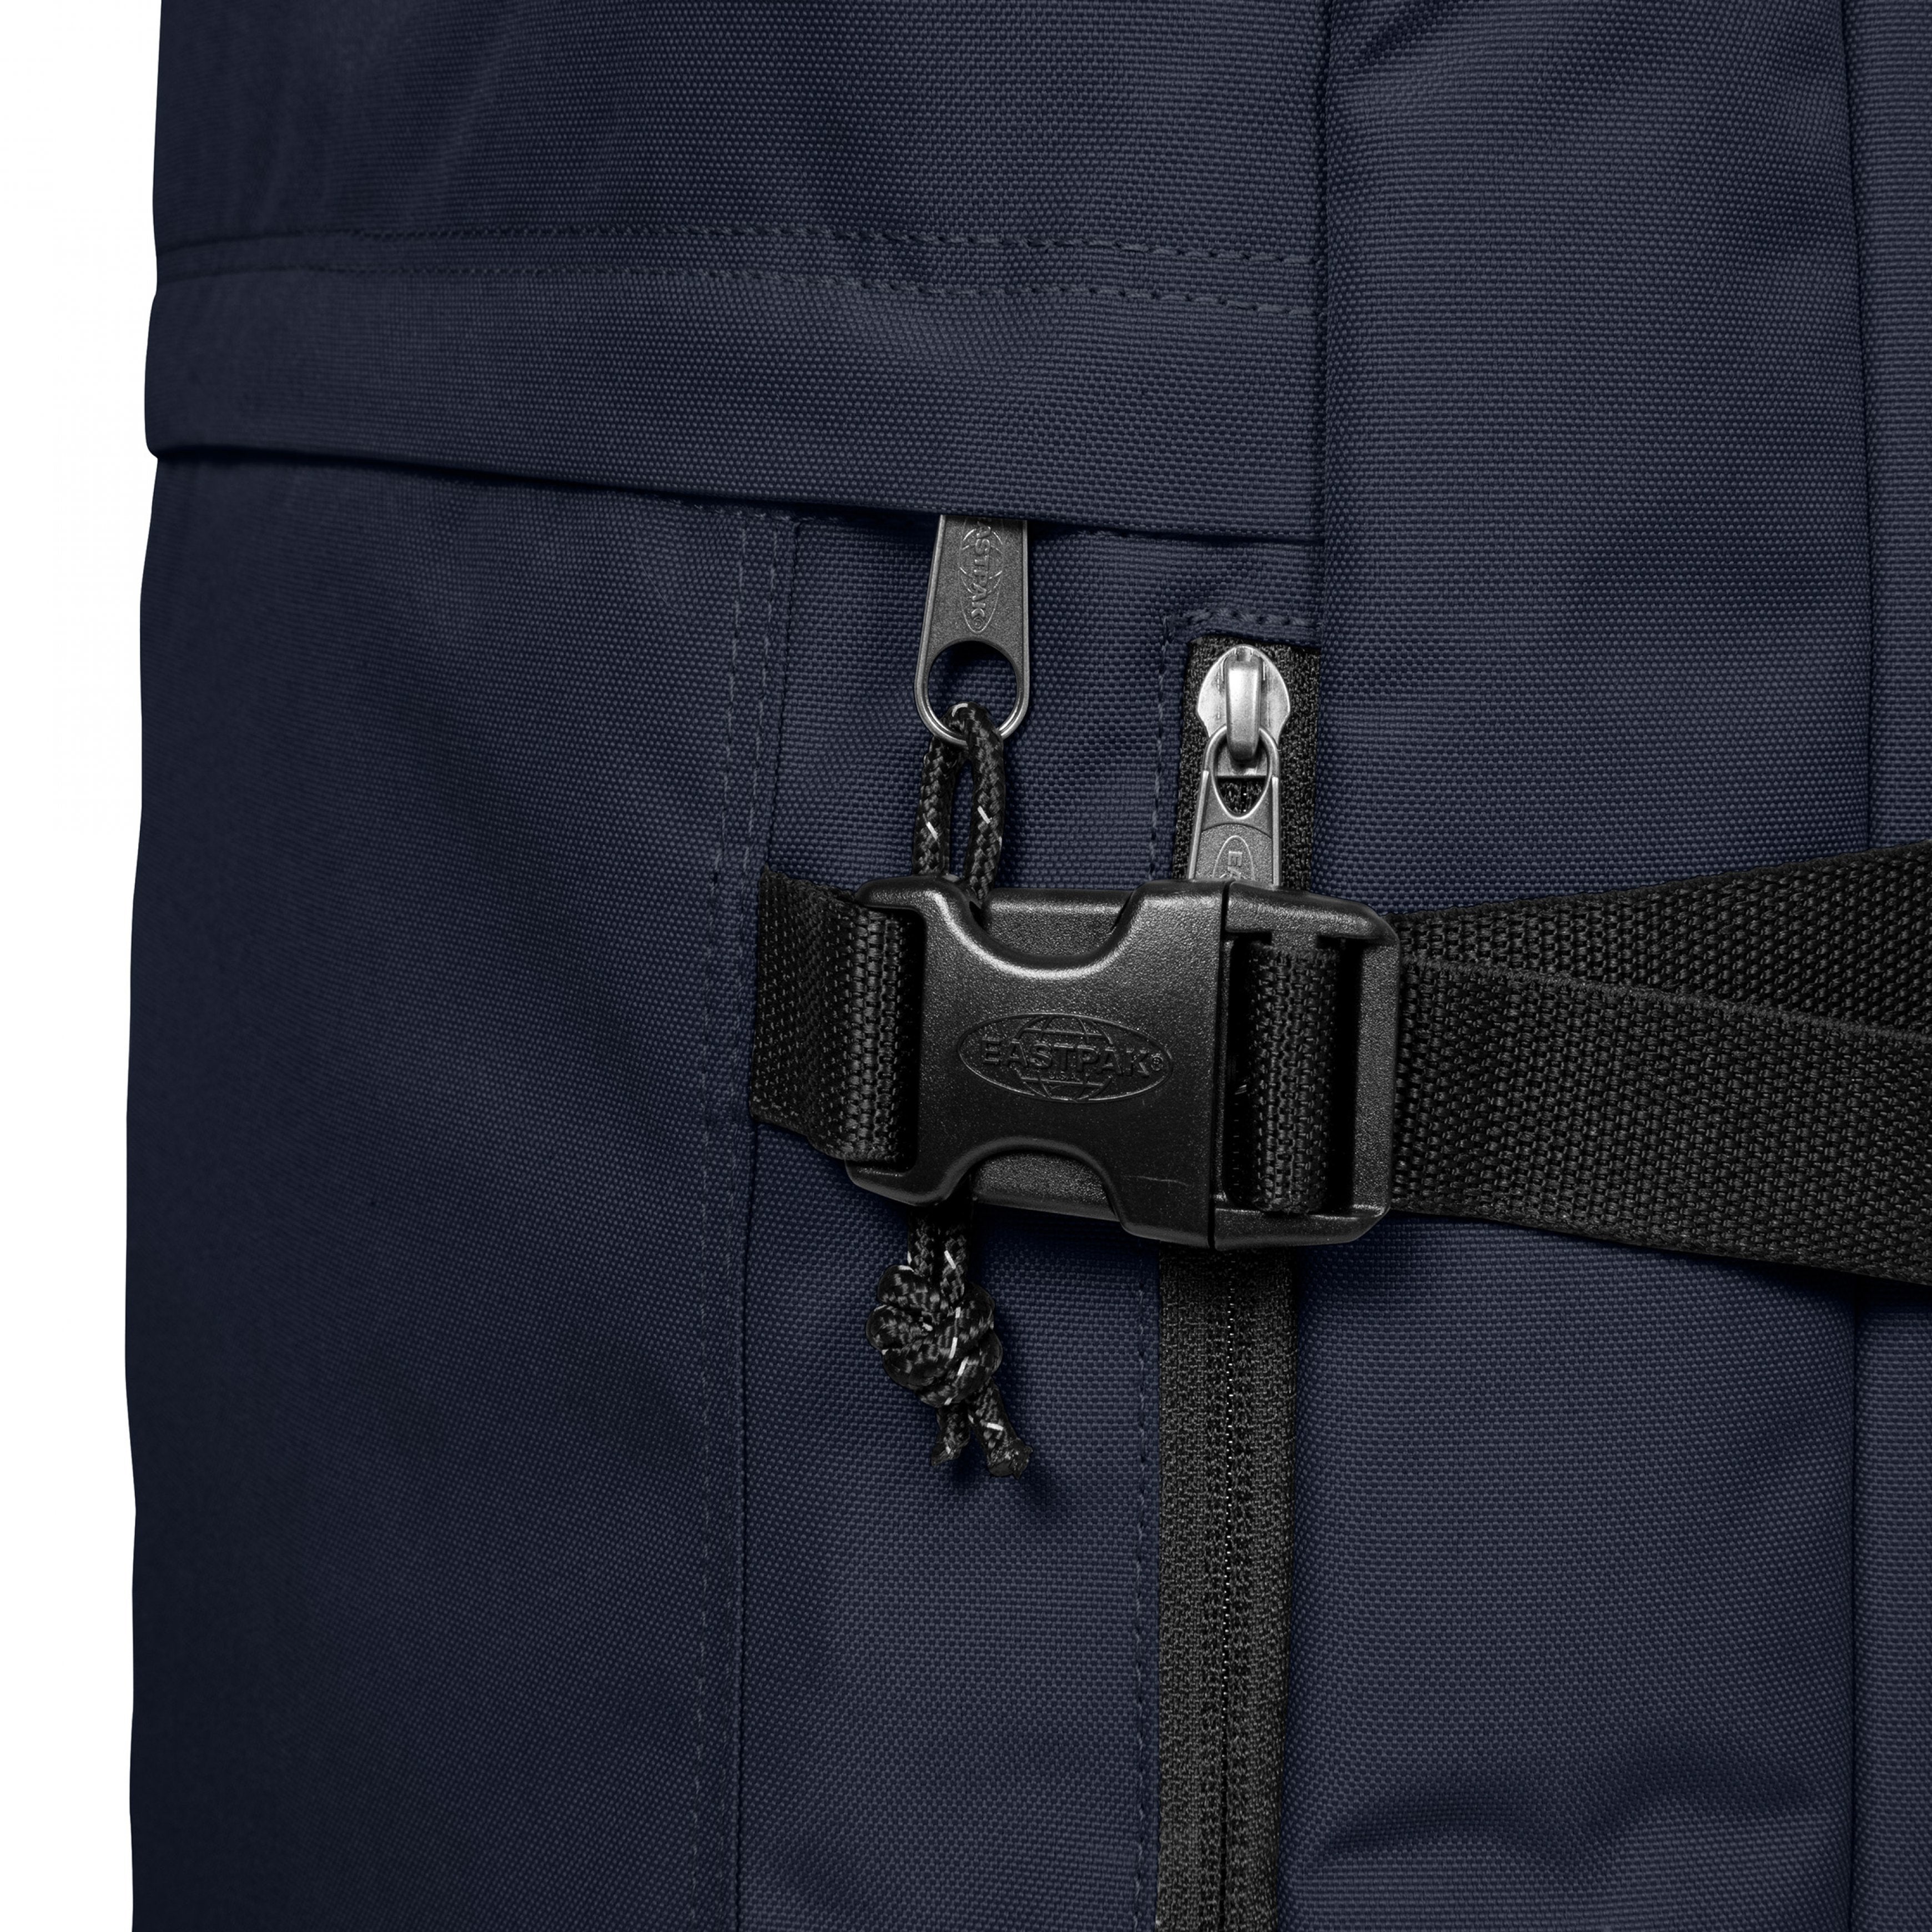 Eastpak-Travelpack-Large Backpack With Laptop Sleeve-Ultra Marine-Ek0A5Bbrl831